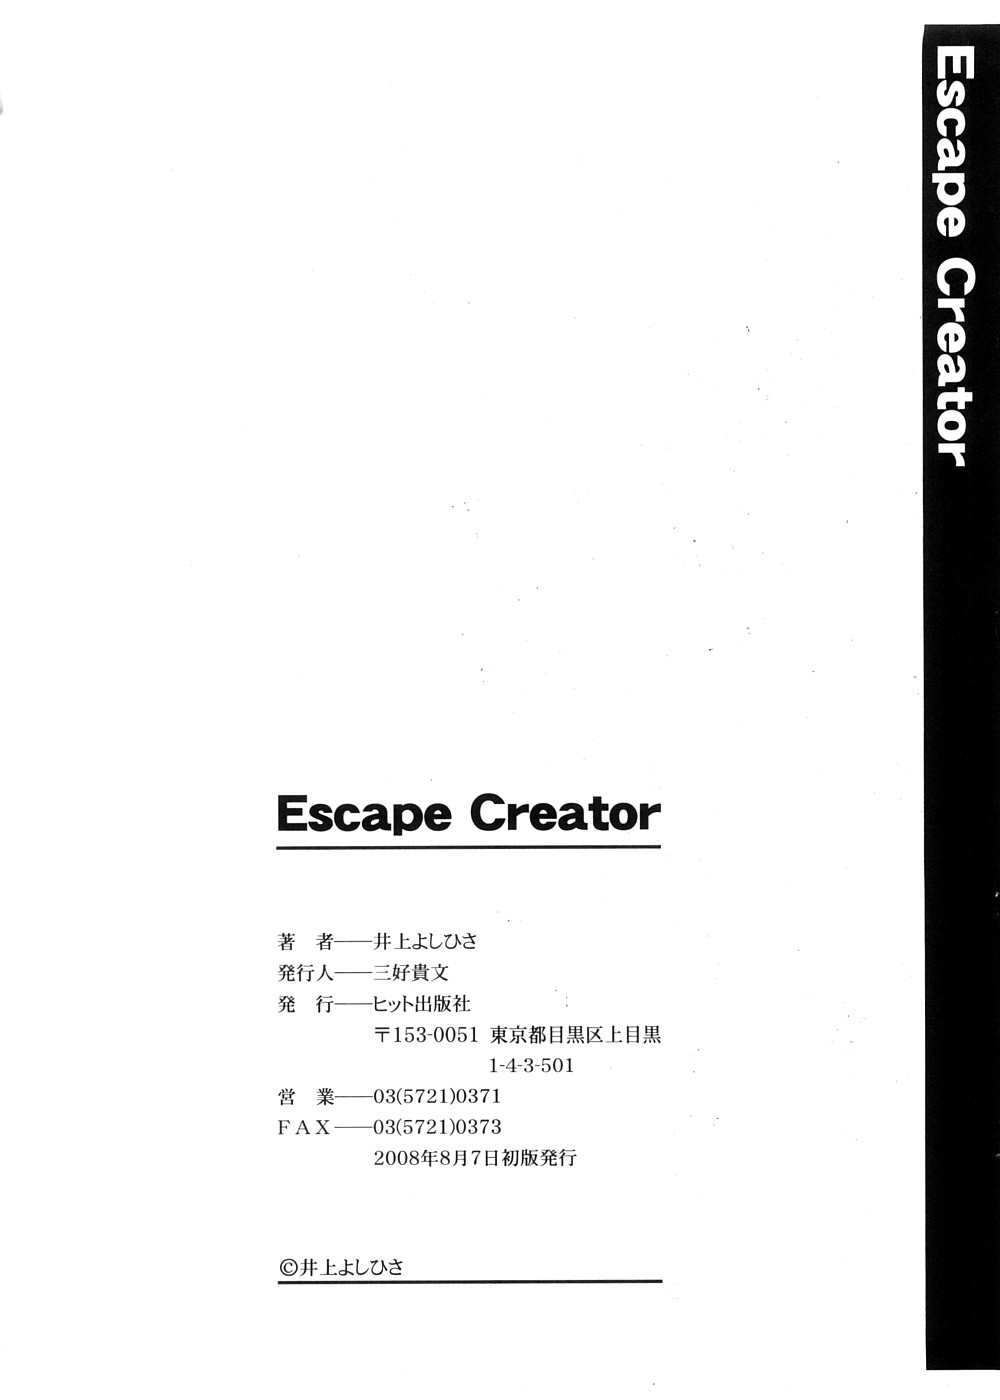 [Inoue Yoshihisa] Escape Creator [井上よしひさ] Escape Creator